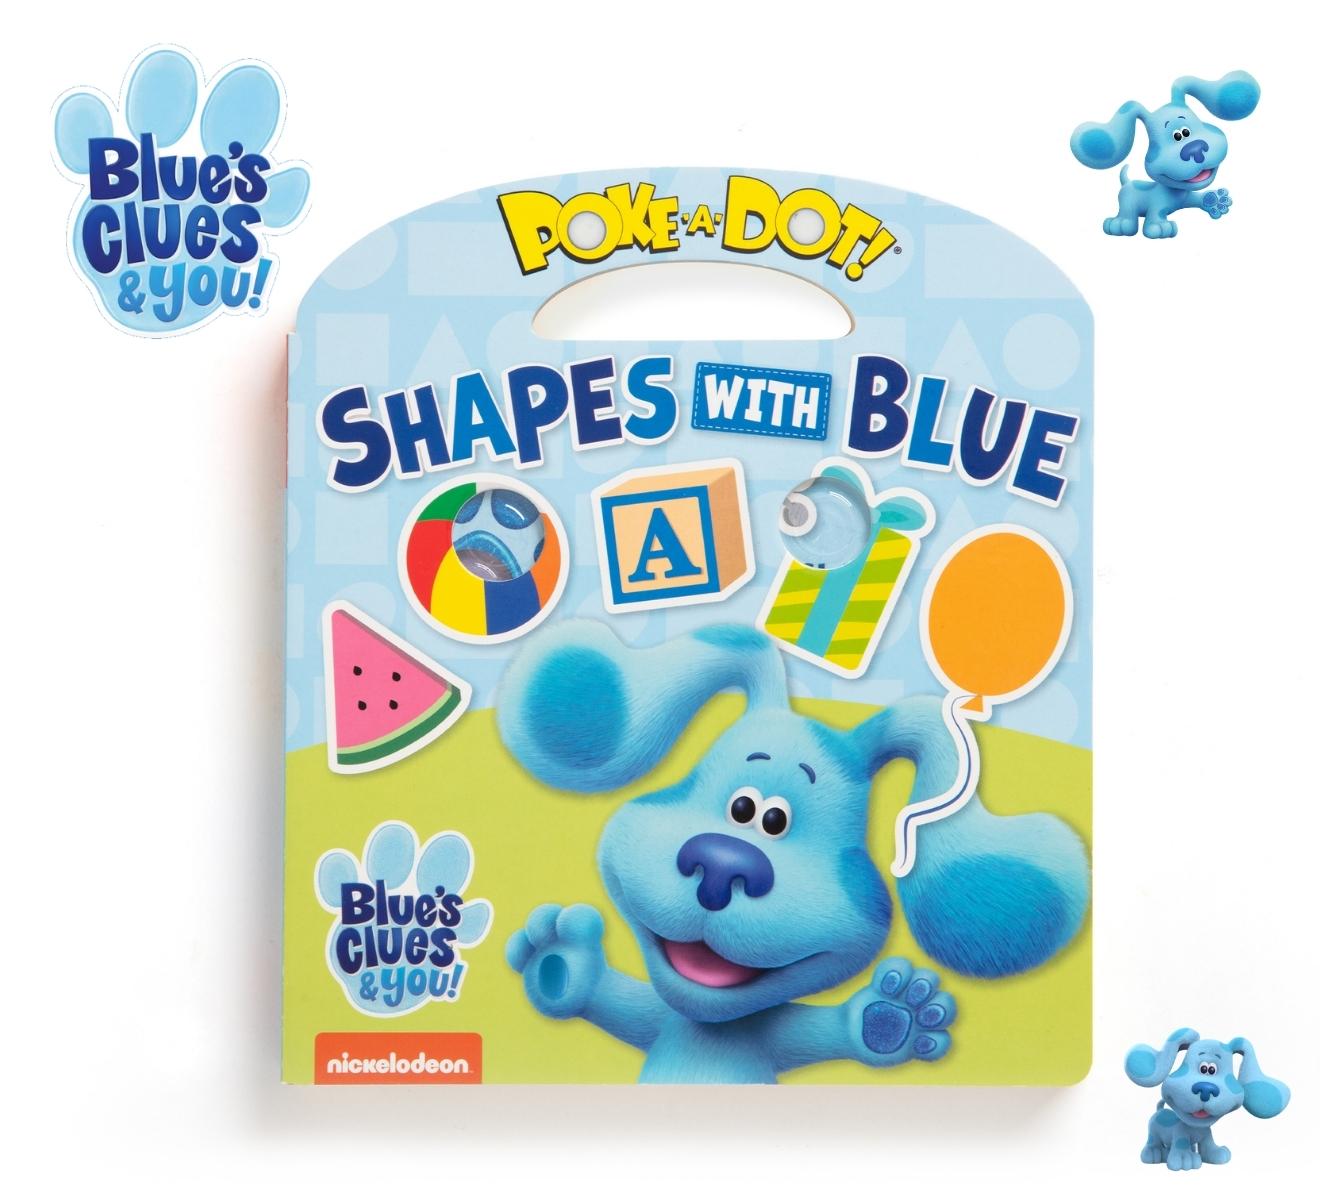 [มีปุ่มกดดึงดูด Blues] รุ่น 33006 หนังสือปุ่มกด รุ่น Shapes  Blue's Clues & You! Poke-A-Dot: Shapes with Blueรีวิวดีใน Amazon USA ไม่เหมือนใคร